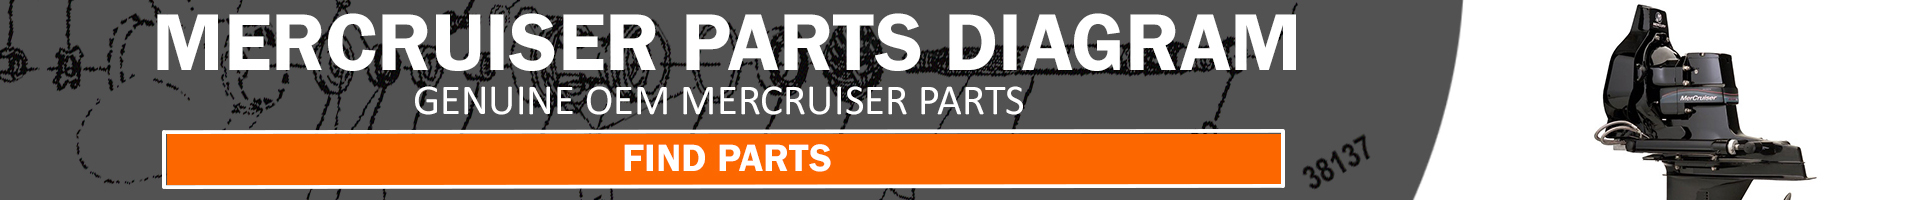 mercruiser-engine-parts-finder-banner.jpg